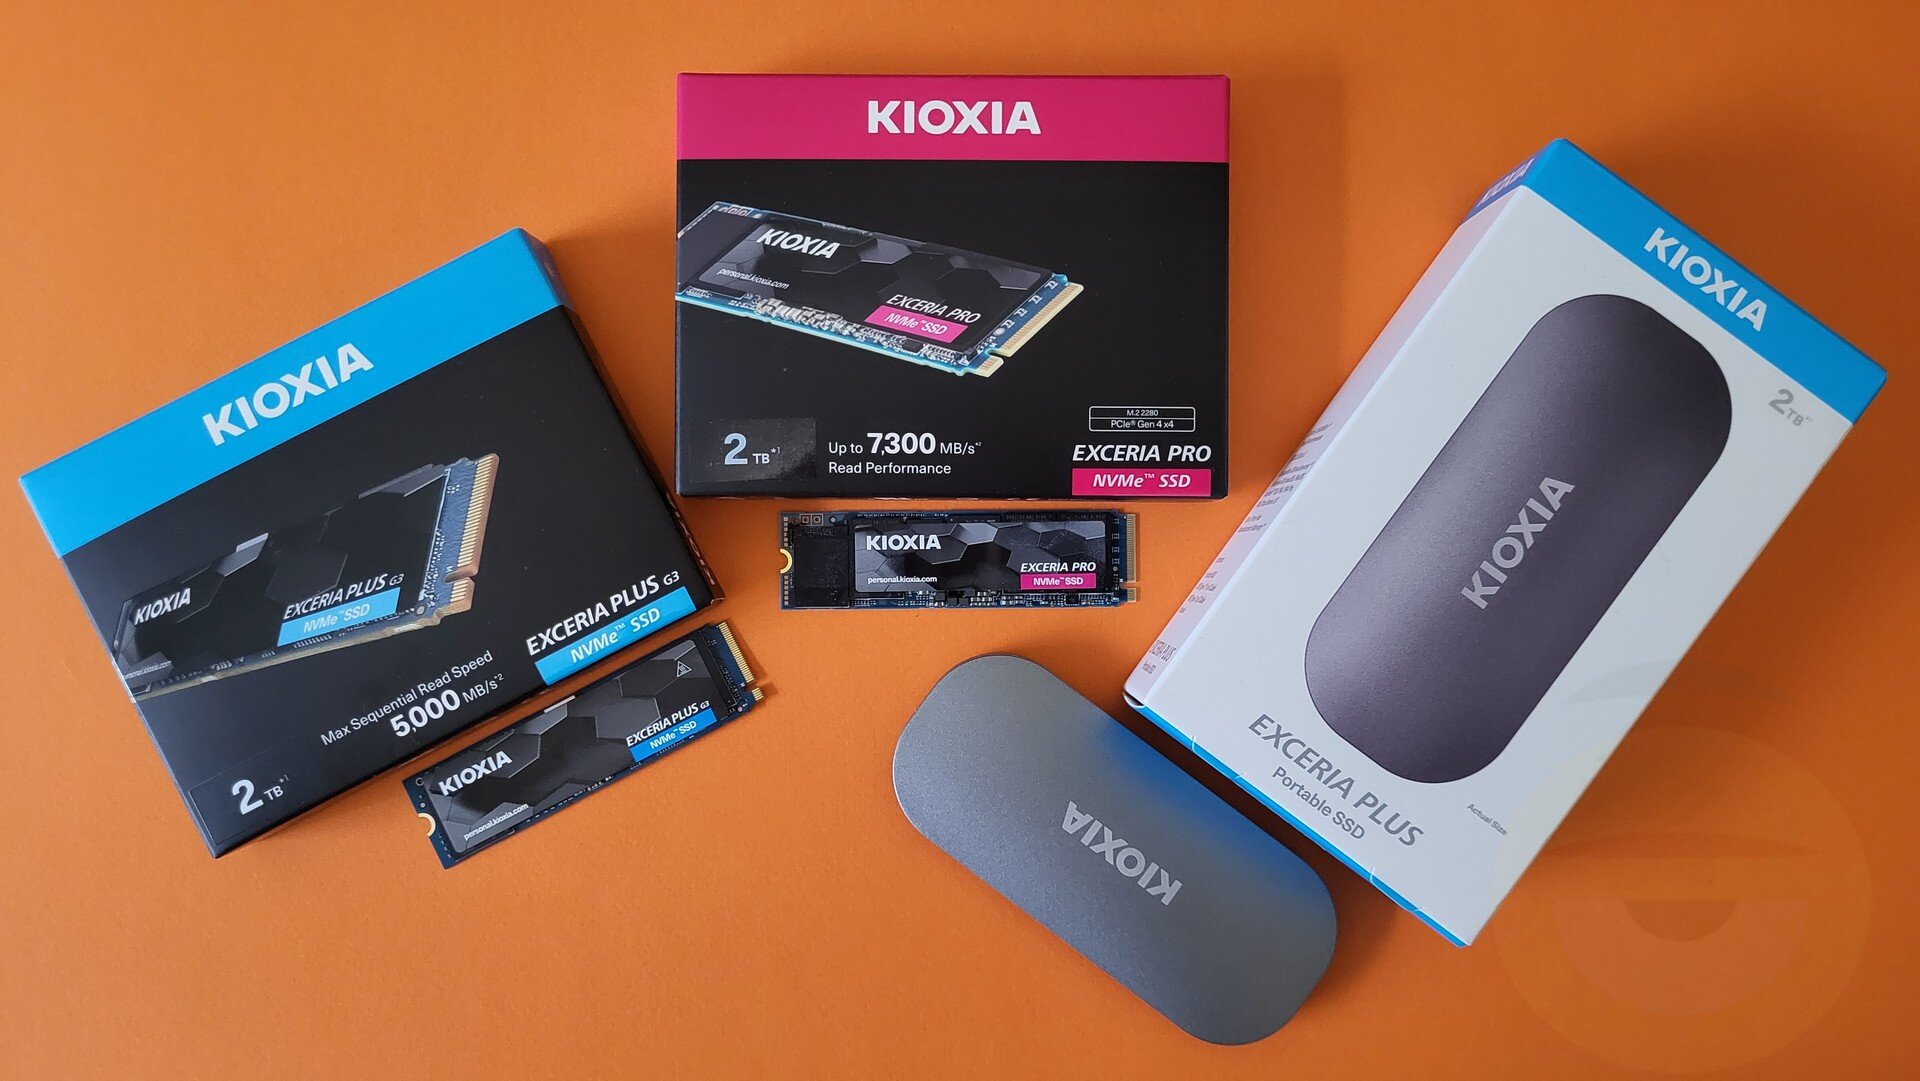 Περισσότερες πληροφορίες για "KIOXIA EXCERIA PRO, PLUS G3 2TB και PLUS Portable SSD Review"